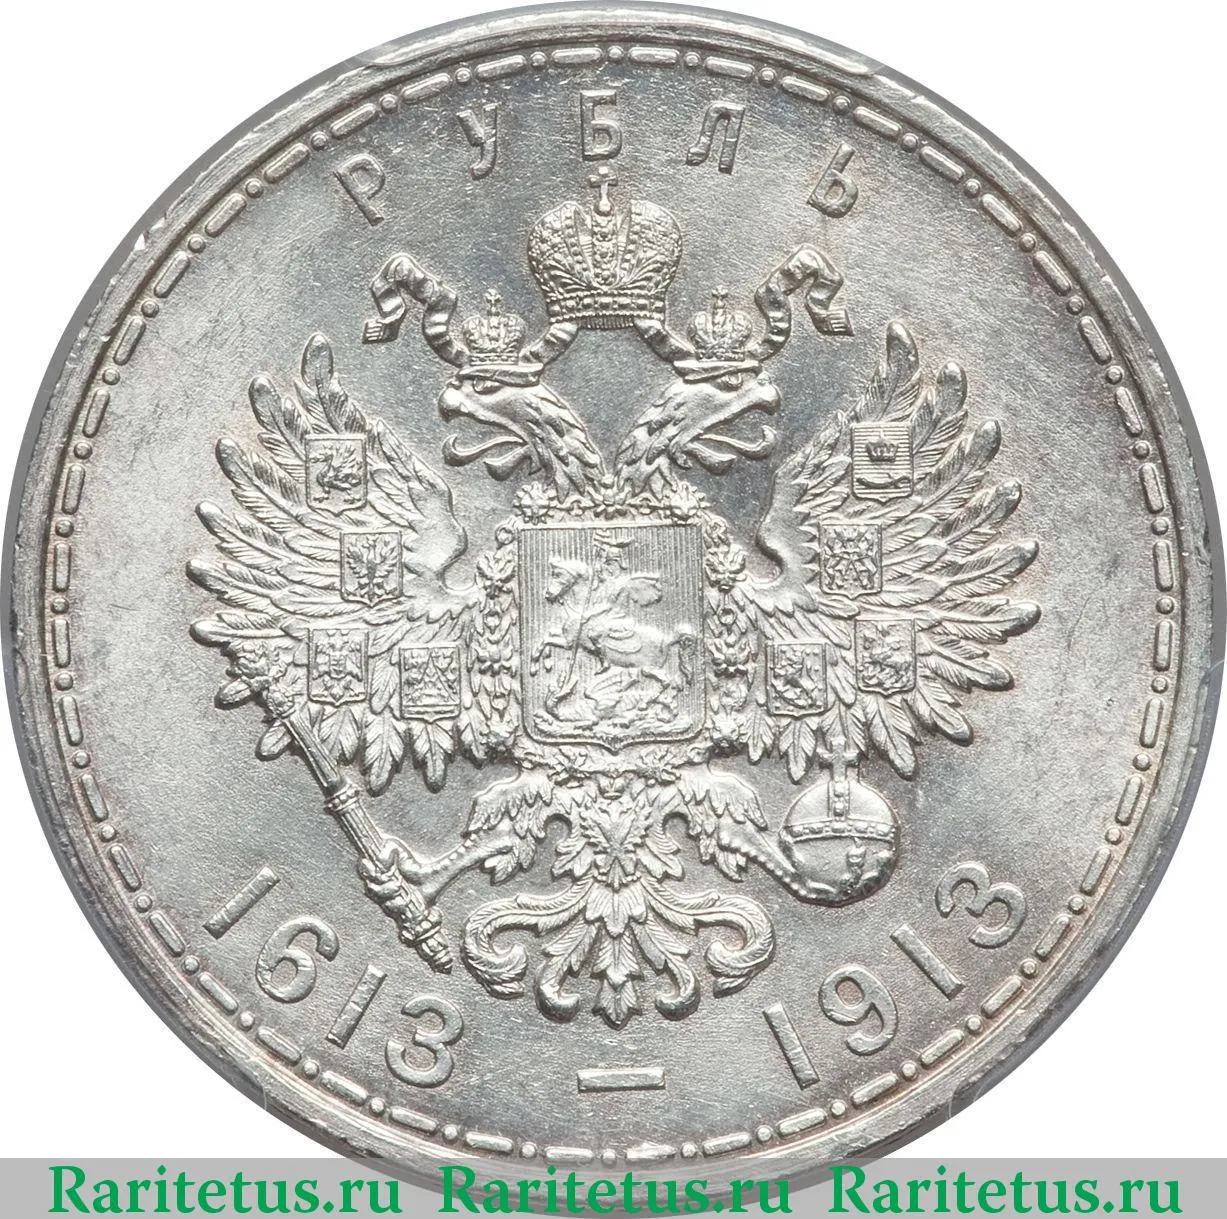 Цена монеты трон в рублях 0 015 биткоинов в рубли